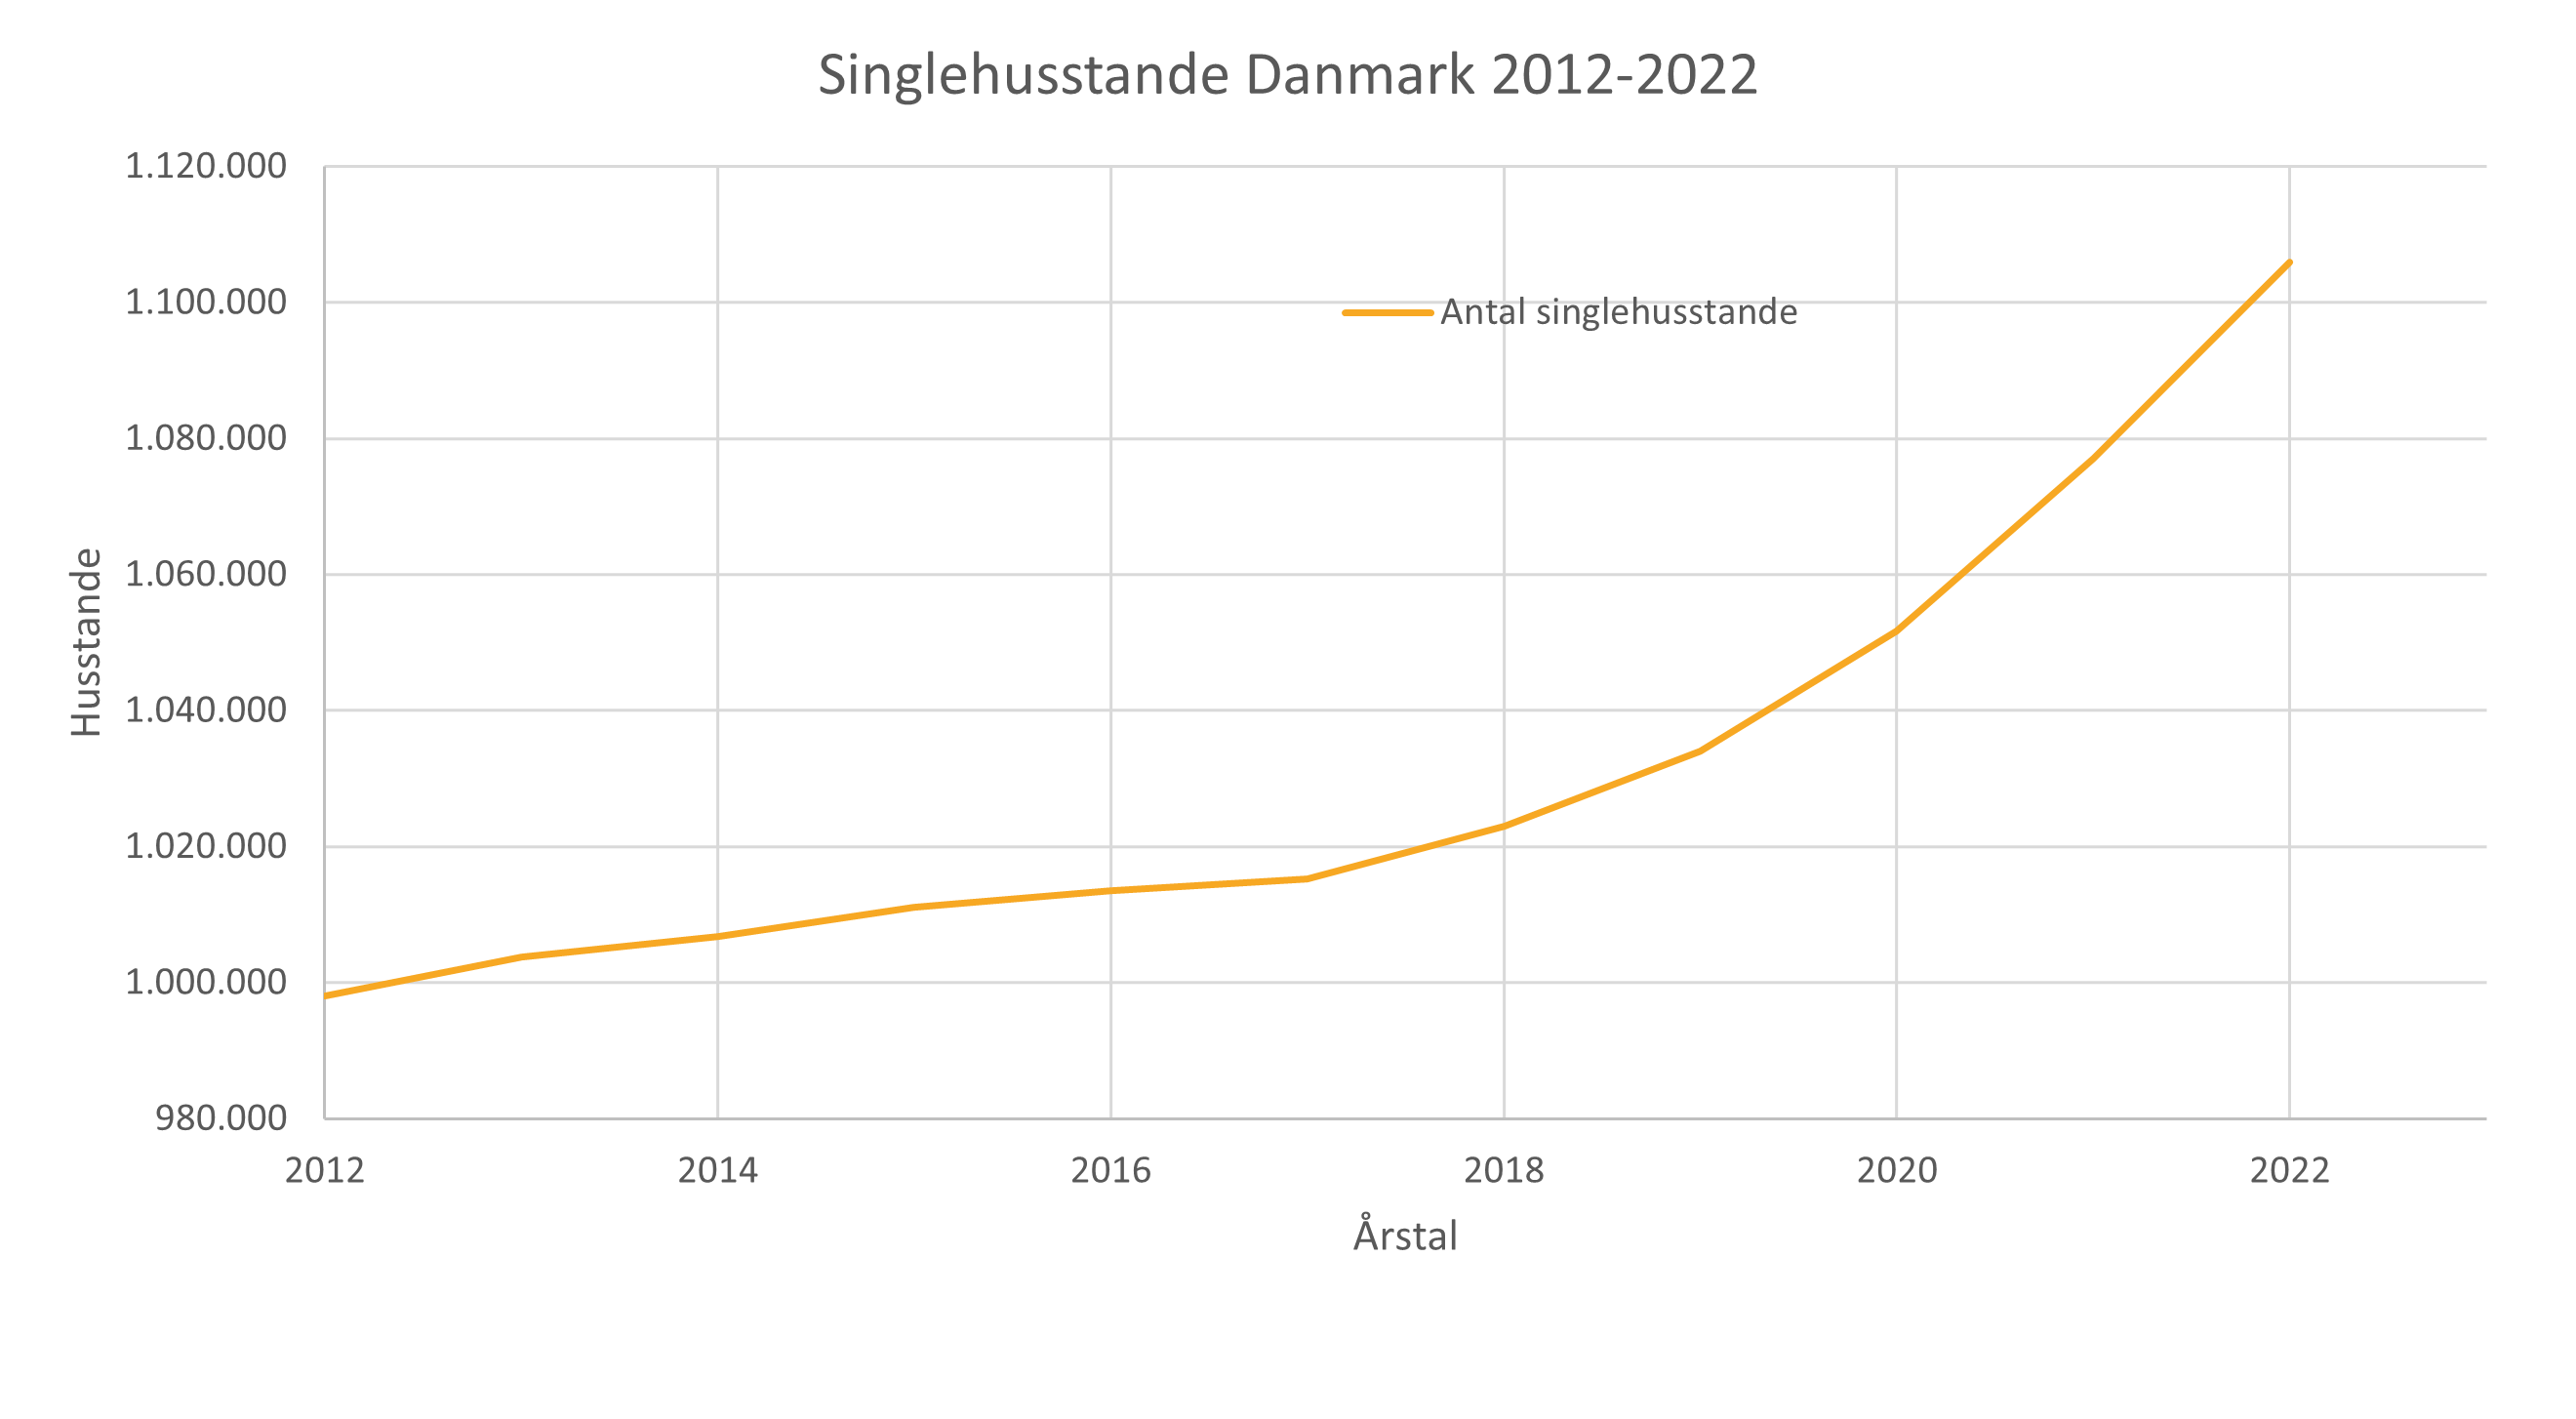 Udviklingen af singlehusstande i Danmark fra 2012-2022